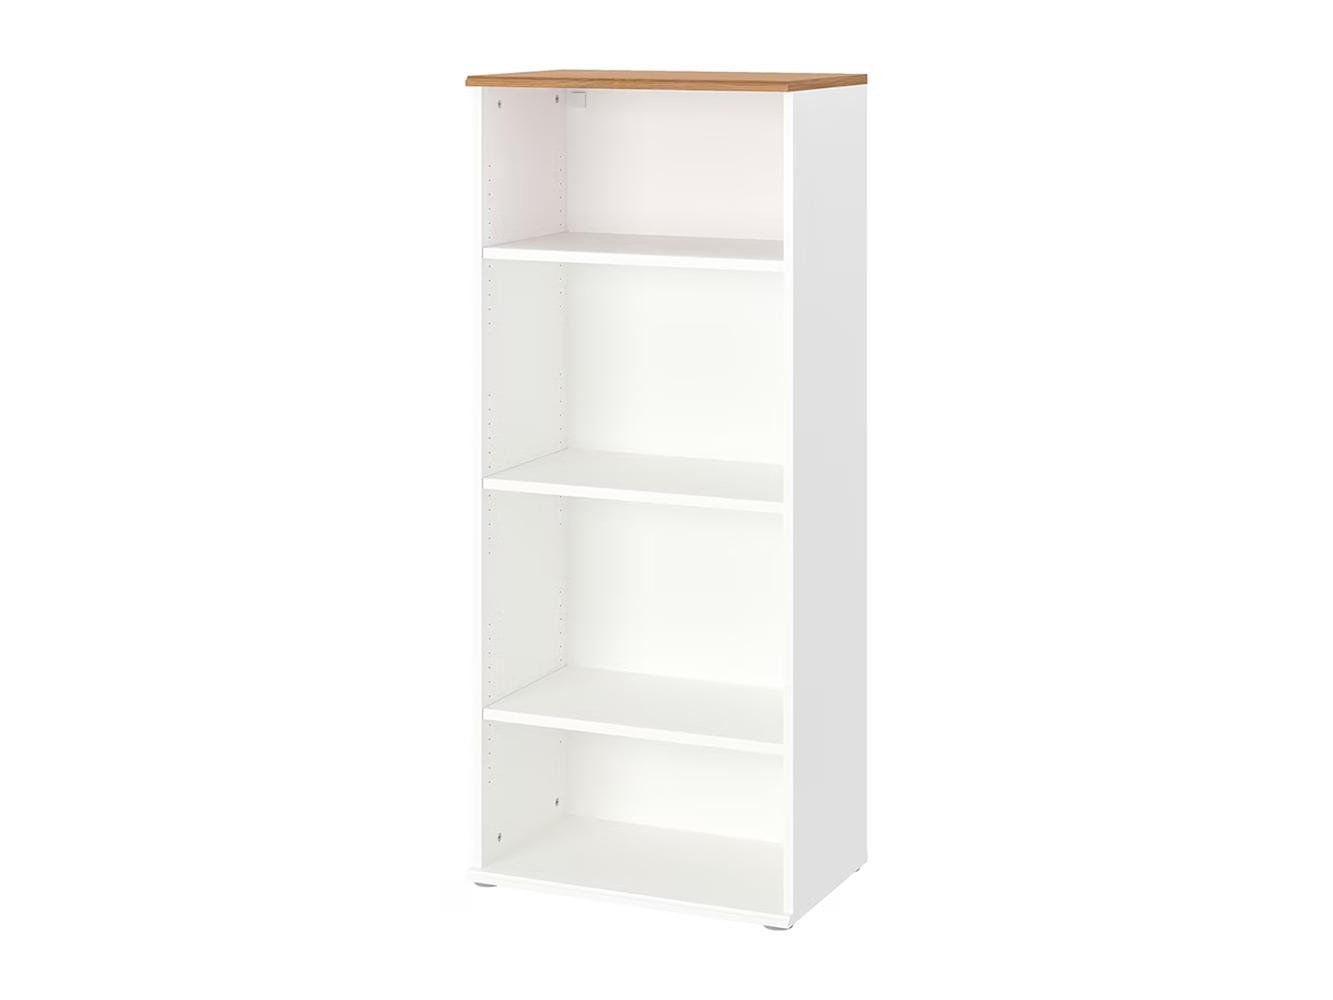  Стеллаж Скрувби 113 white ИКЕА (IKEA) изображение товара